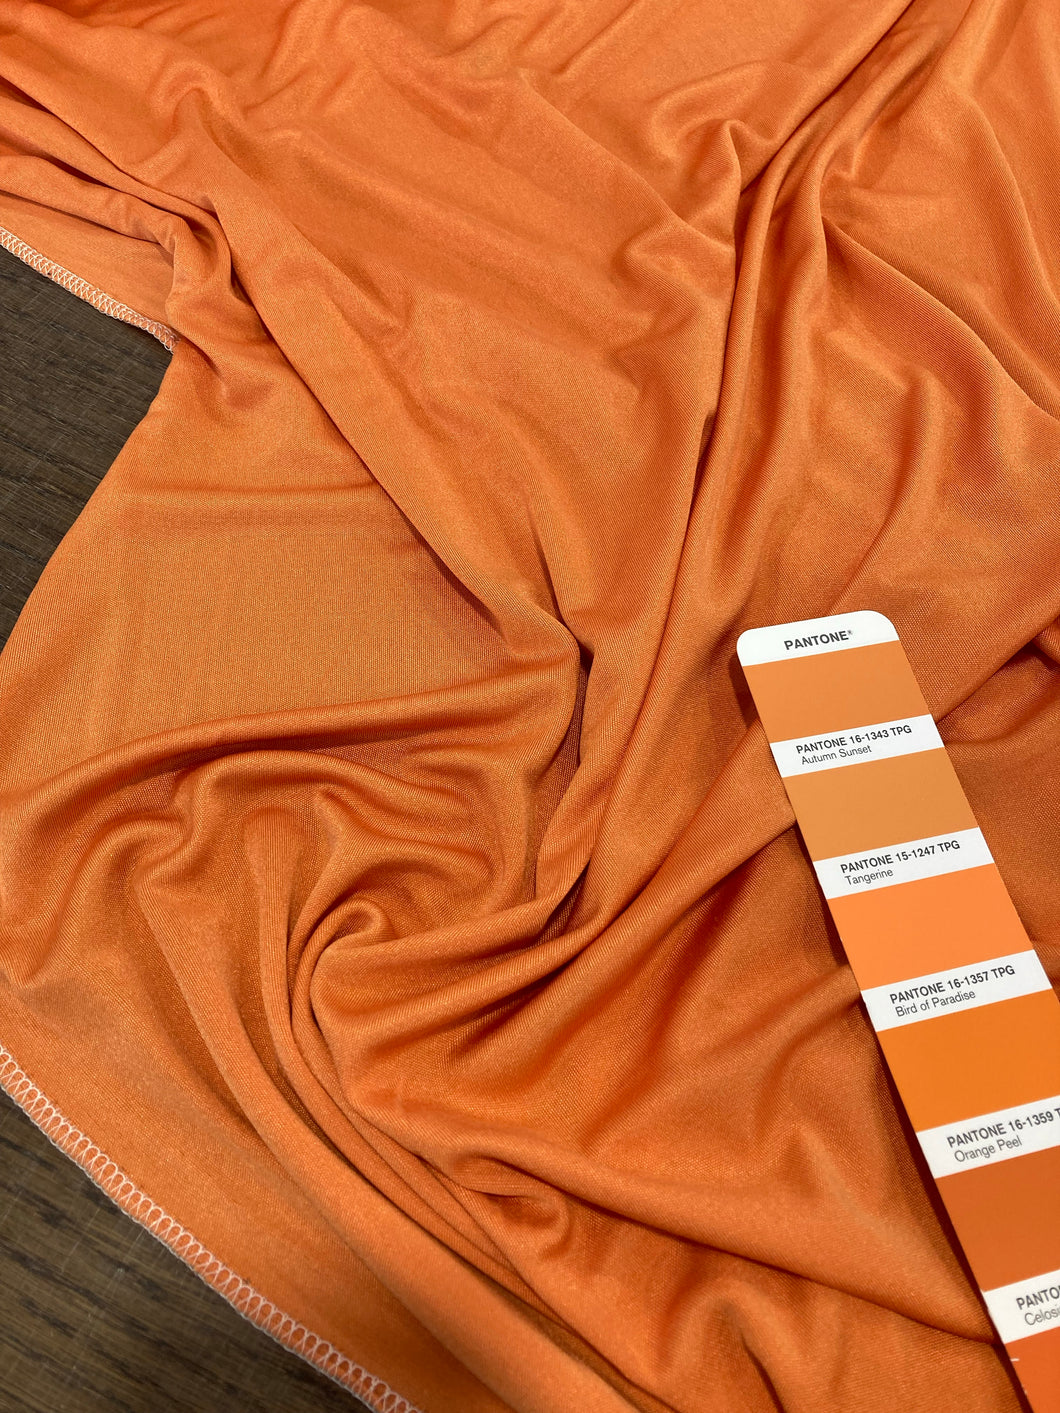 Maglia di seta arancione: 38€/m